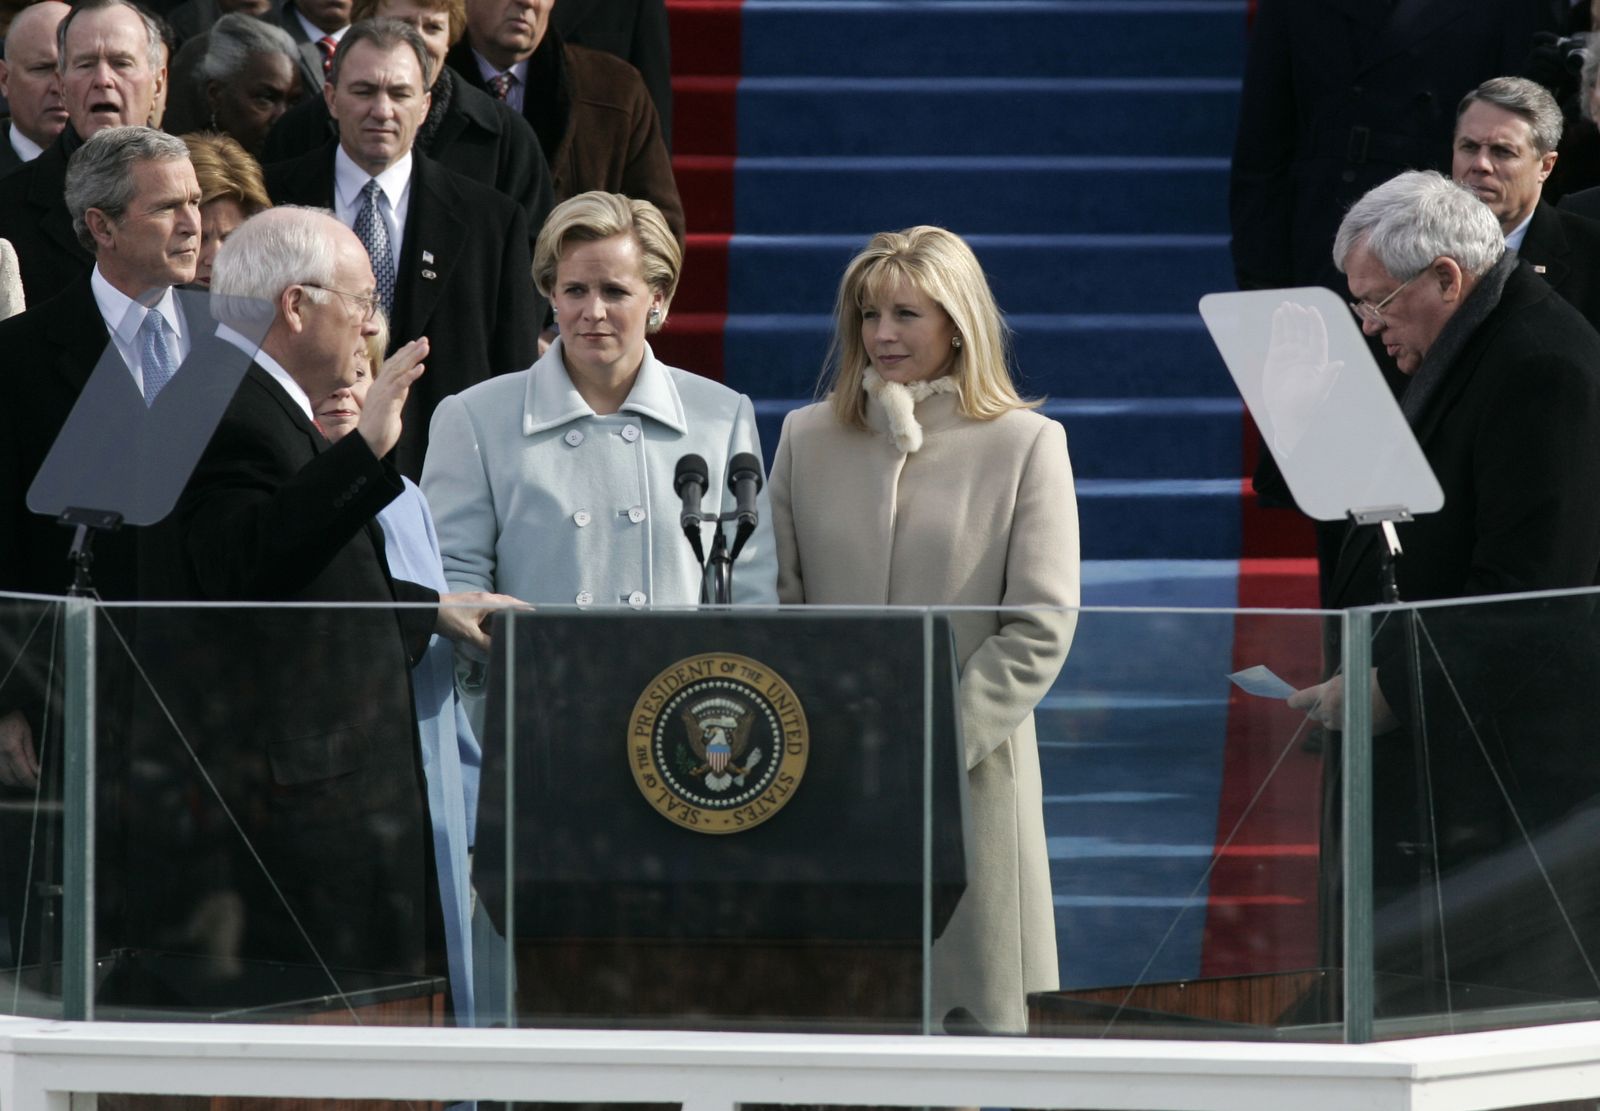 نائب الرئيس الأميركي ديك تشيني يؤدي اليمين الدستورية نائباً للرئيس الأميركي لفترة ثانية وإلى جواره زوجته لين تشيني (وسط) ونجلته ليز تشيني (يمين) - واشنطن دي سي - 20 يناير 2005 - REUTERS